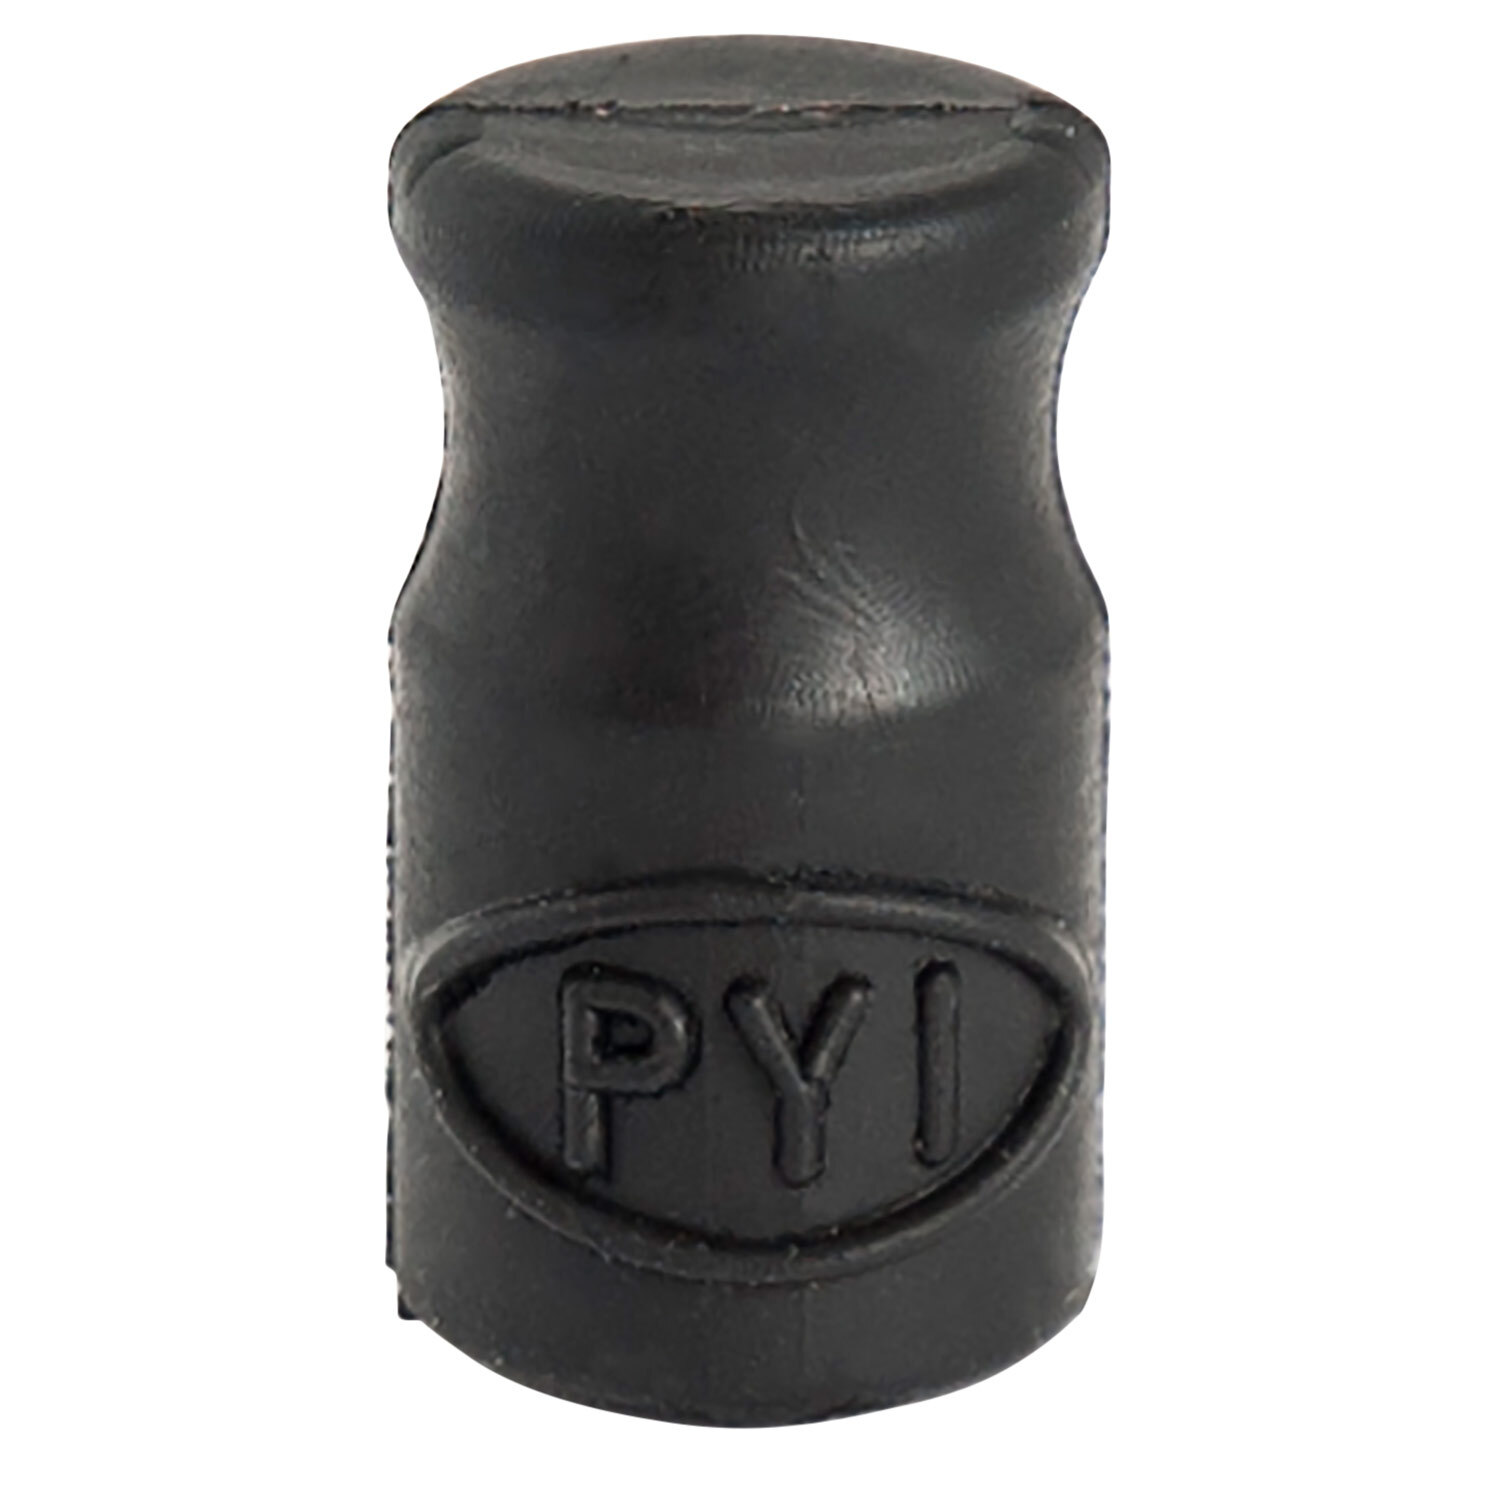 PYI Inc.  Hose Clamps